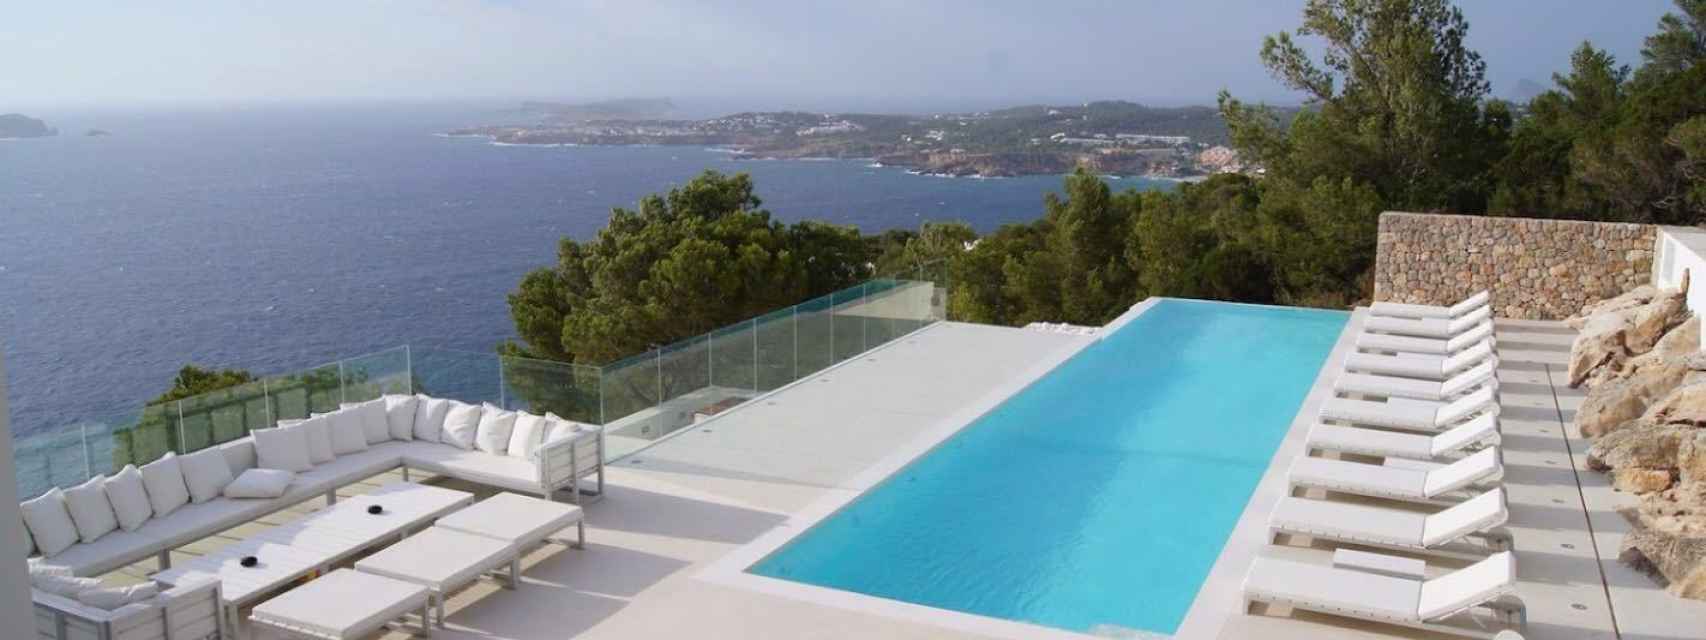 Vistas desde la terraza de la mansión comprada por Dadak en Ibiza.